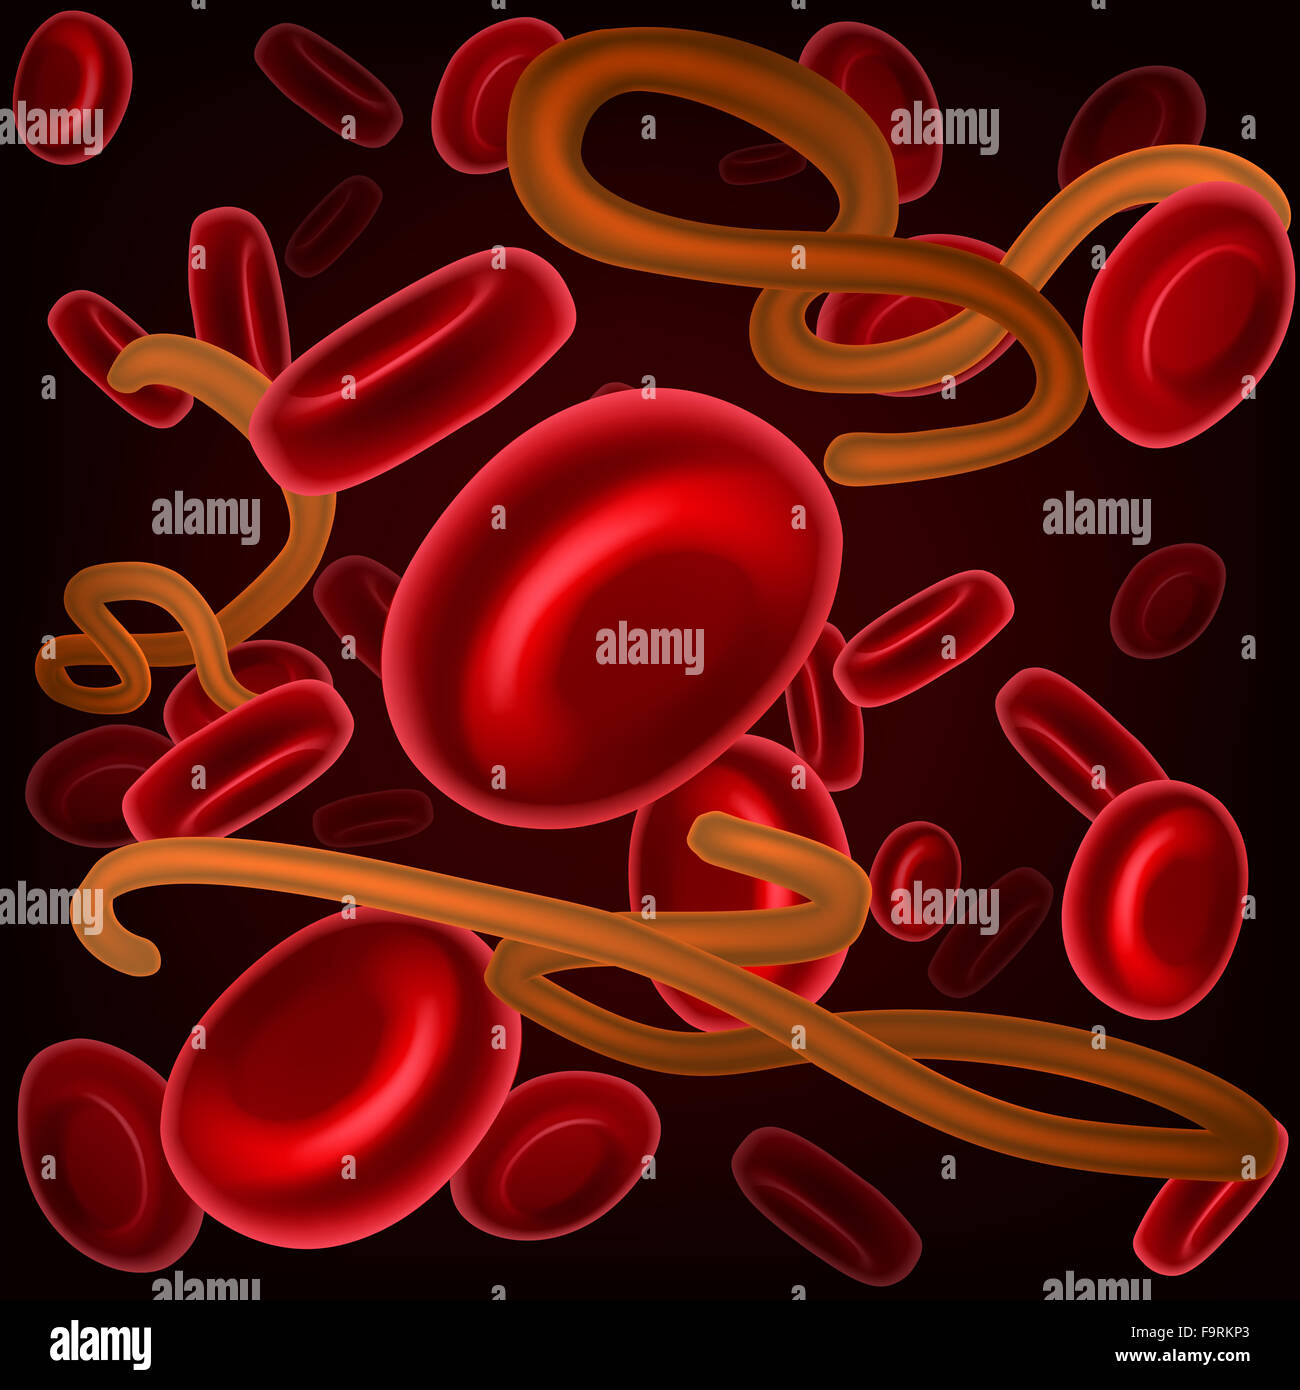 Eine medizinische Illustration, einen mikroskopischen Blick auf eine Krankheit Virus Zellen oder Bakterien Keime und roten menschlichen Blutzellen Stockfoto